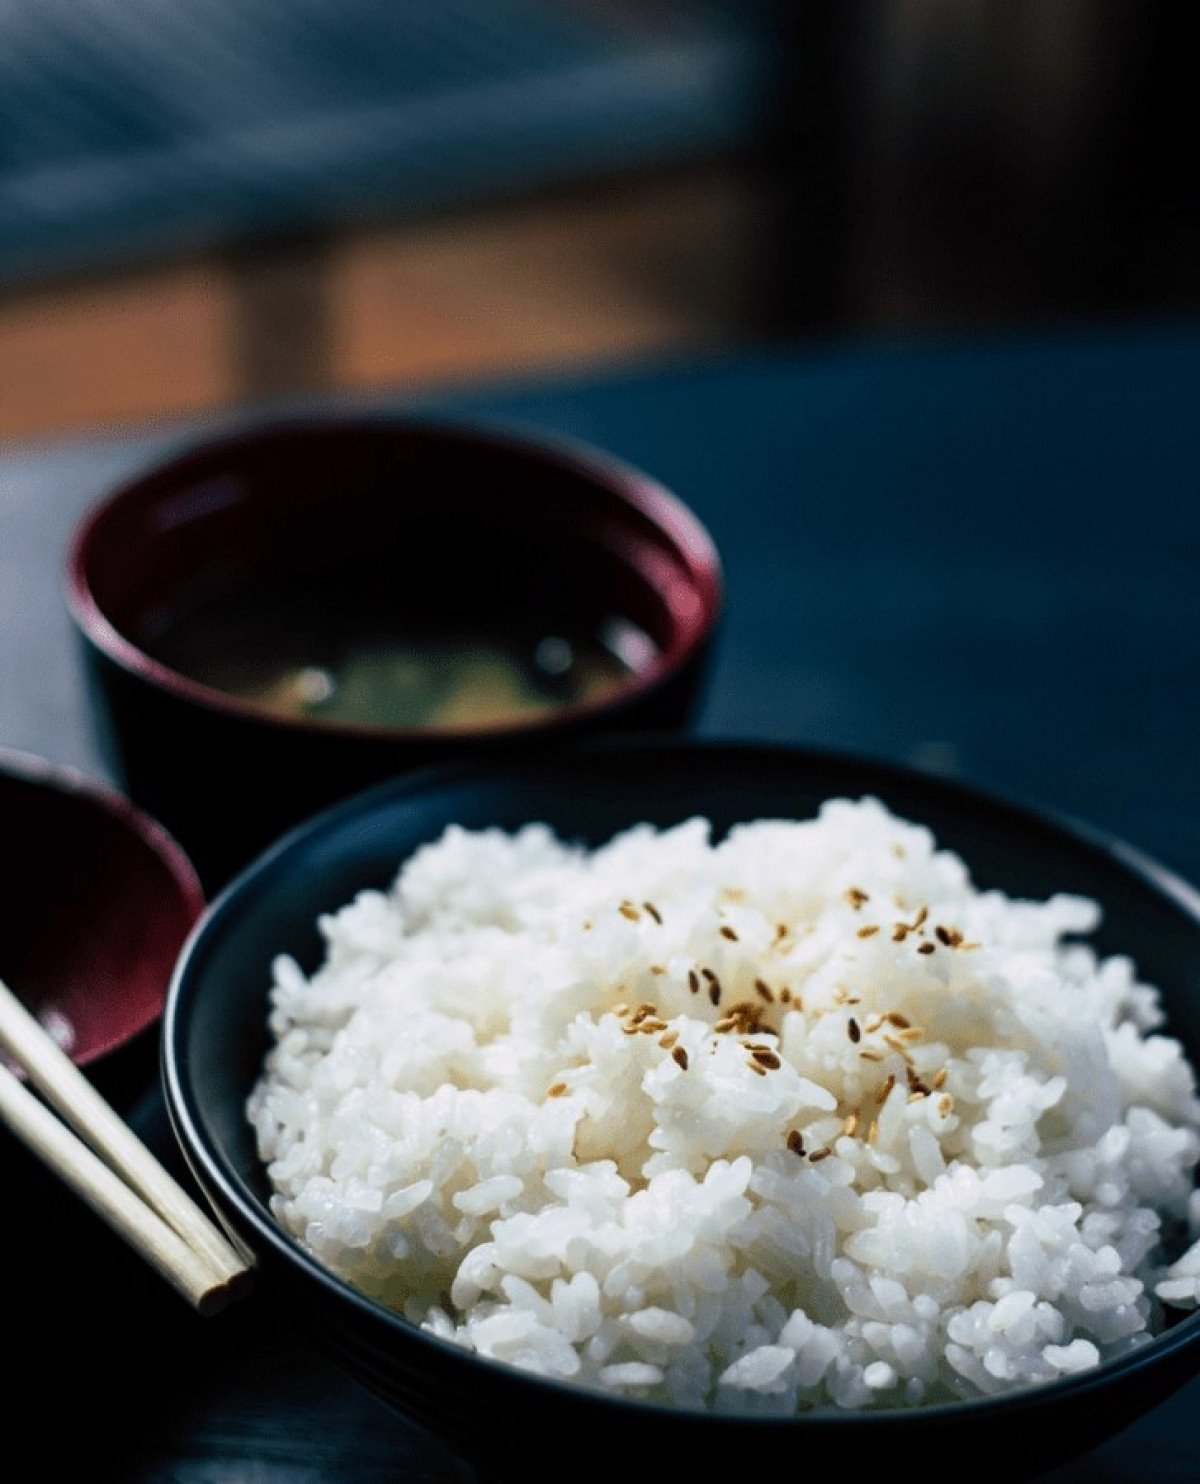 Gạo: Sau khi nấu chín, bạn không nên bảo quản cơm ở nhiệt độ phòng, vì cơm nấu chín rất dễ nhiễm các vi khuẩn gây đau bụng và các vấn đề về tiêu hóa. Nếu bạn không ăn hết cơm ngay, bạn có thể bảo quản cơm trong túi bọc chân không.